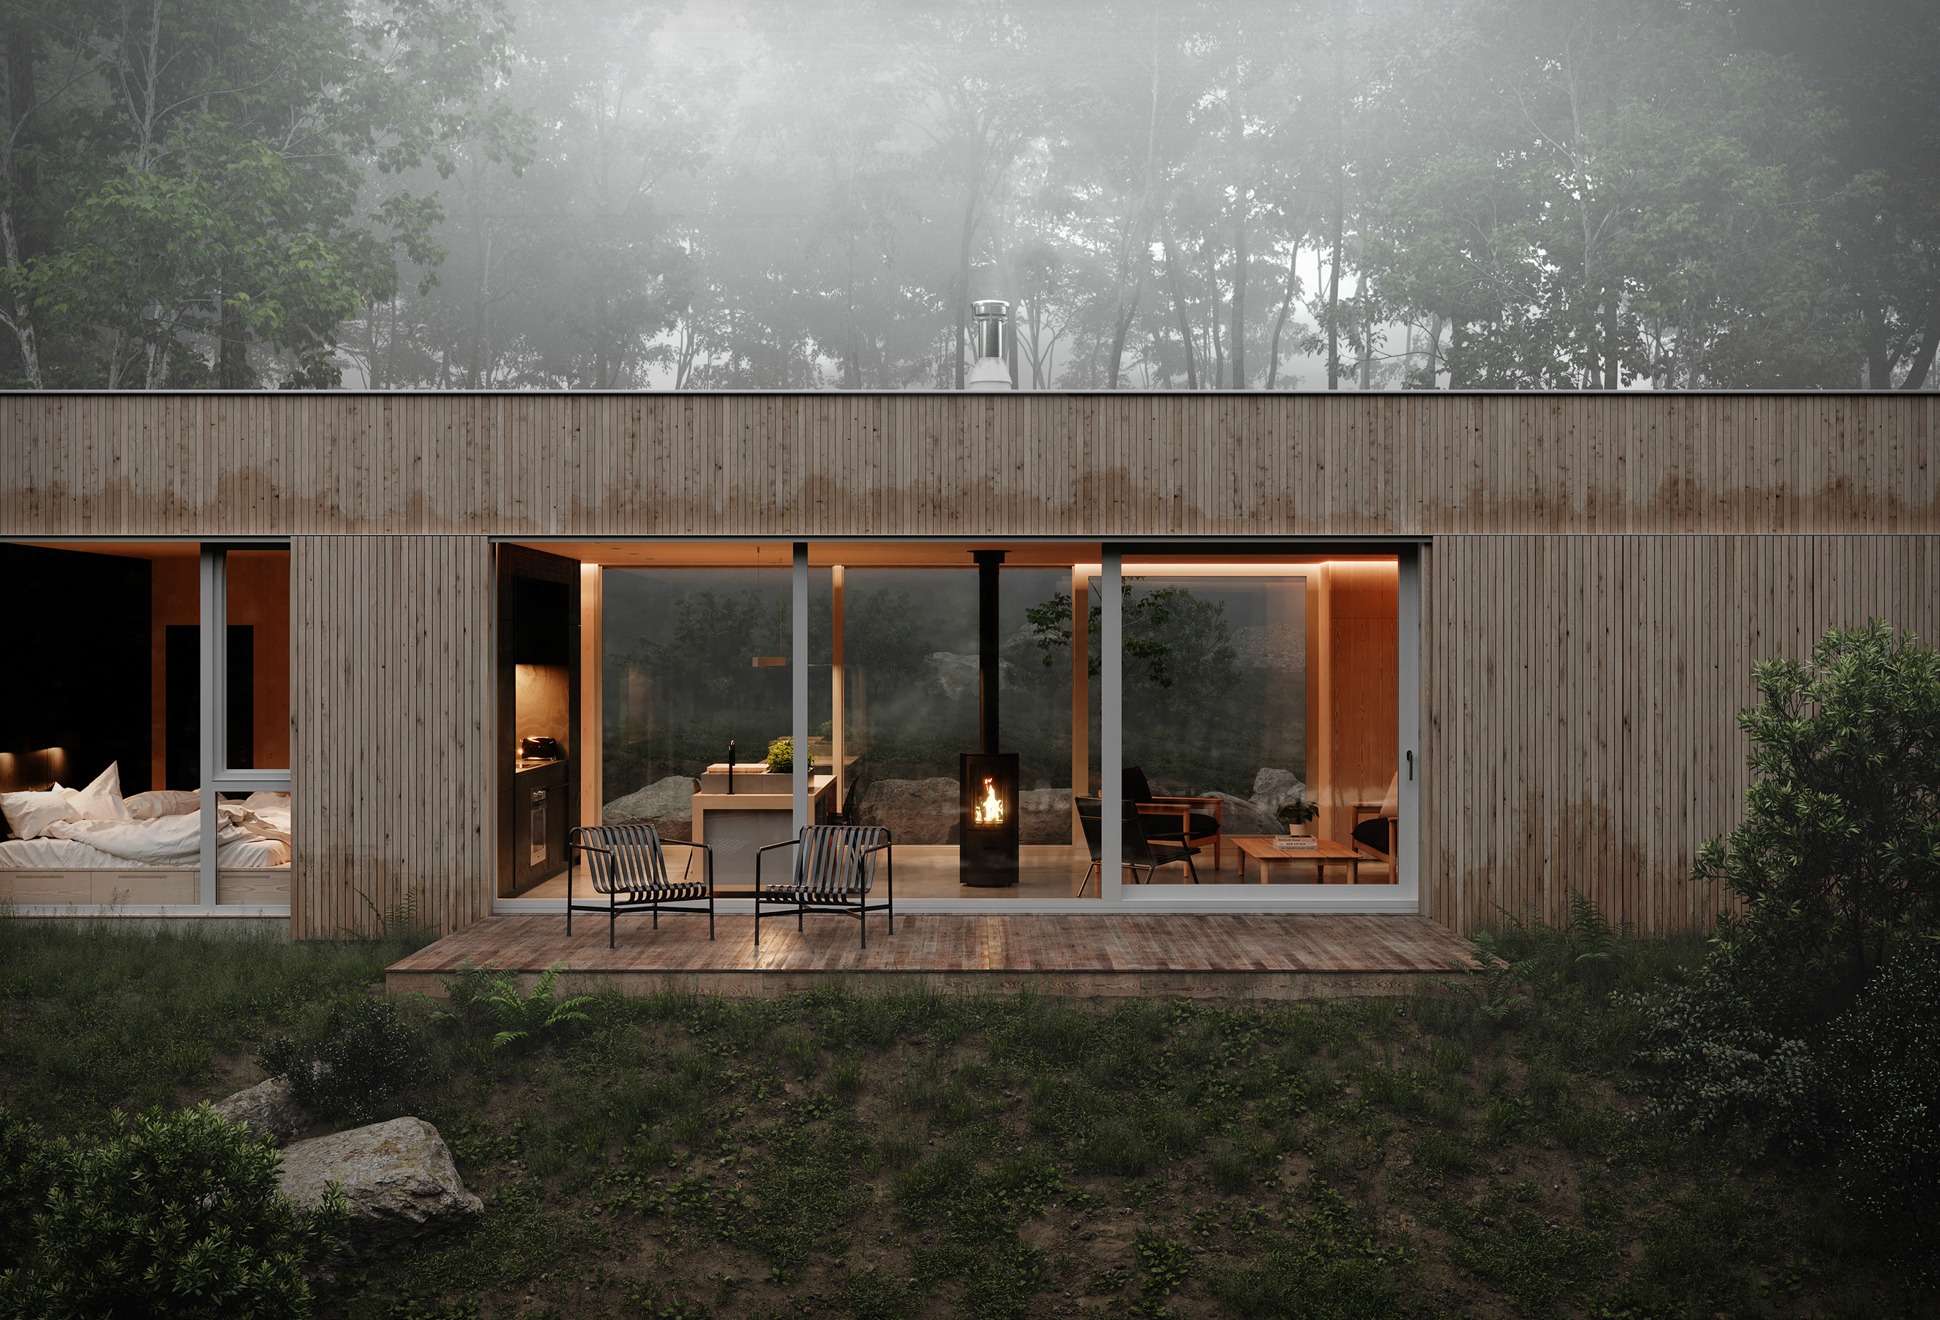 Hinterhouse: A Casa De Campo Moderna No Meio Da Natureza | Image